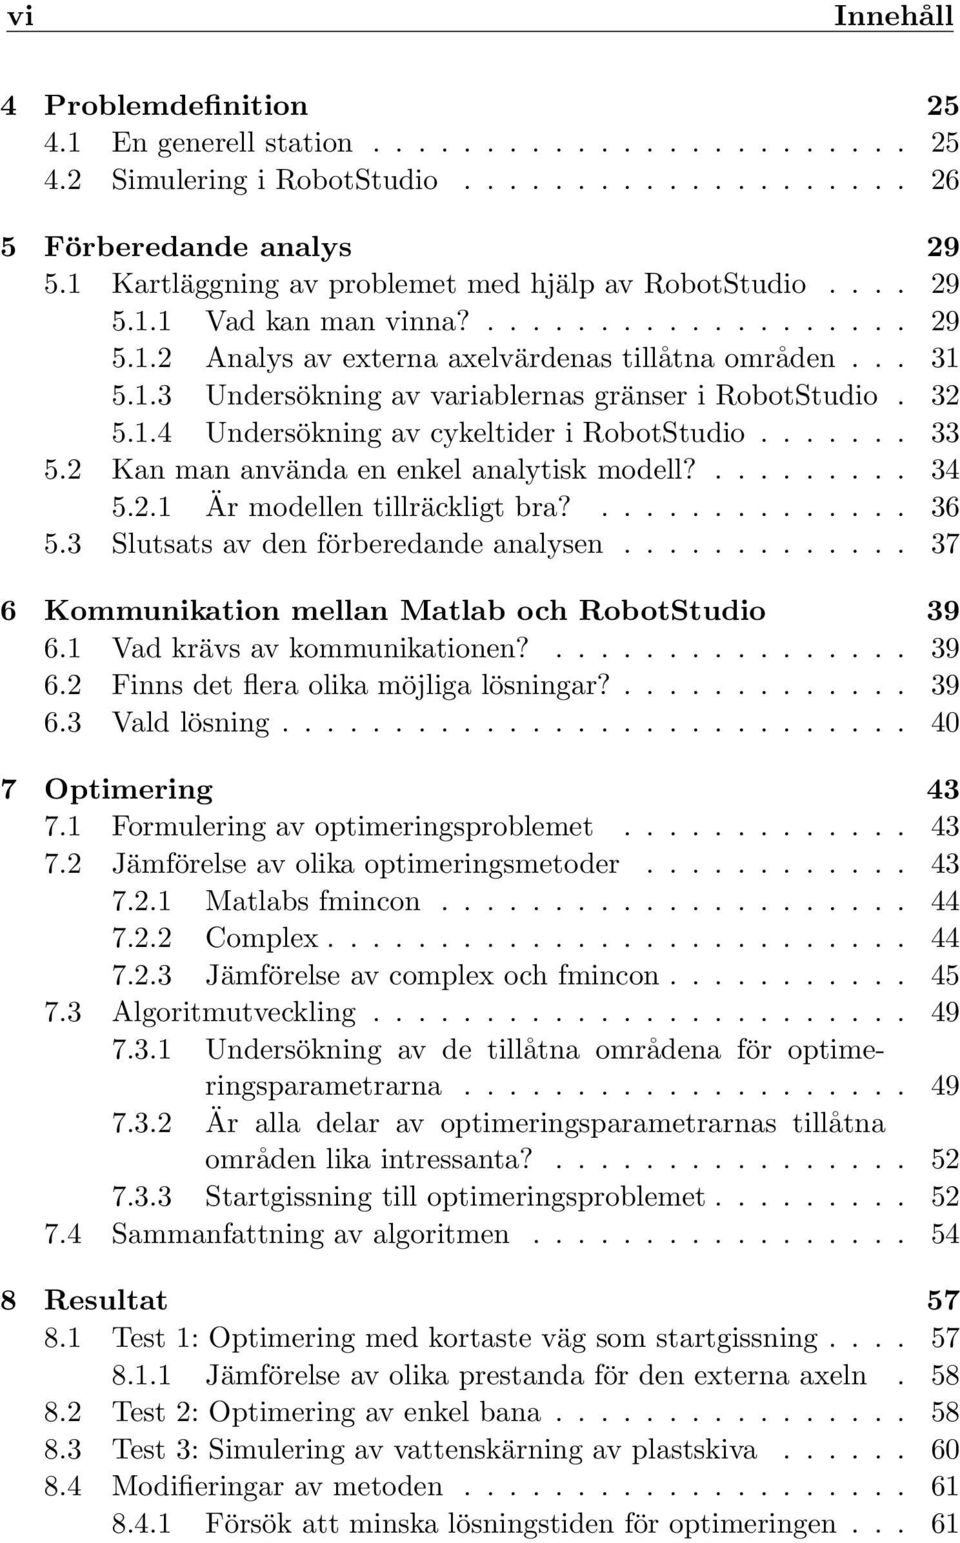 32 5.1.4 Undersökning av cykeltider i RobotStudio....... 33 5.2 Kan man använda en enkel analytisk modell?......... 34 5.2.1 Är modellen tillräckligt bra?.............. 36 5.